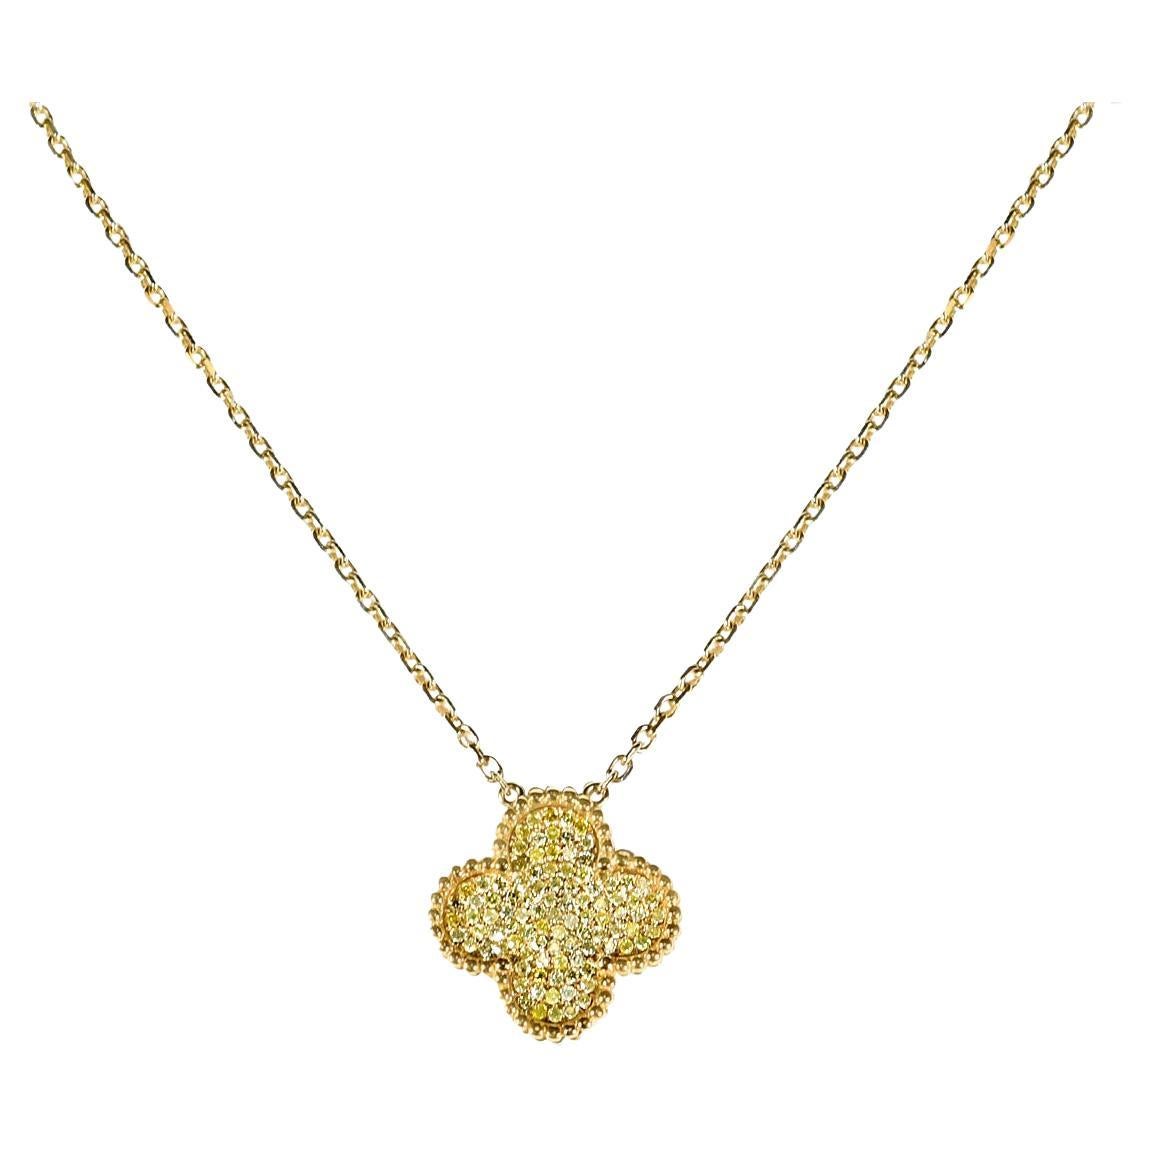 Important collier pendentif trèfle fantaisie en or 18 carats avec diamants jaunes, 6 042 $, Neuf avec étiquette